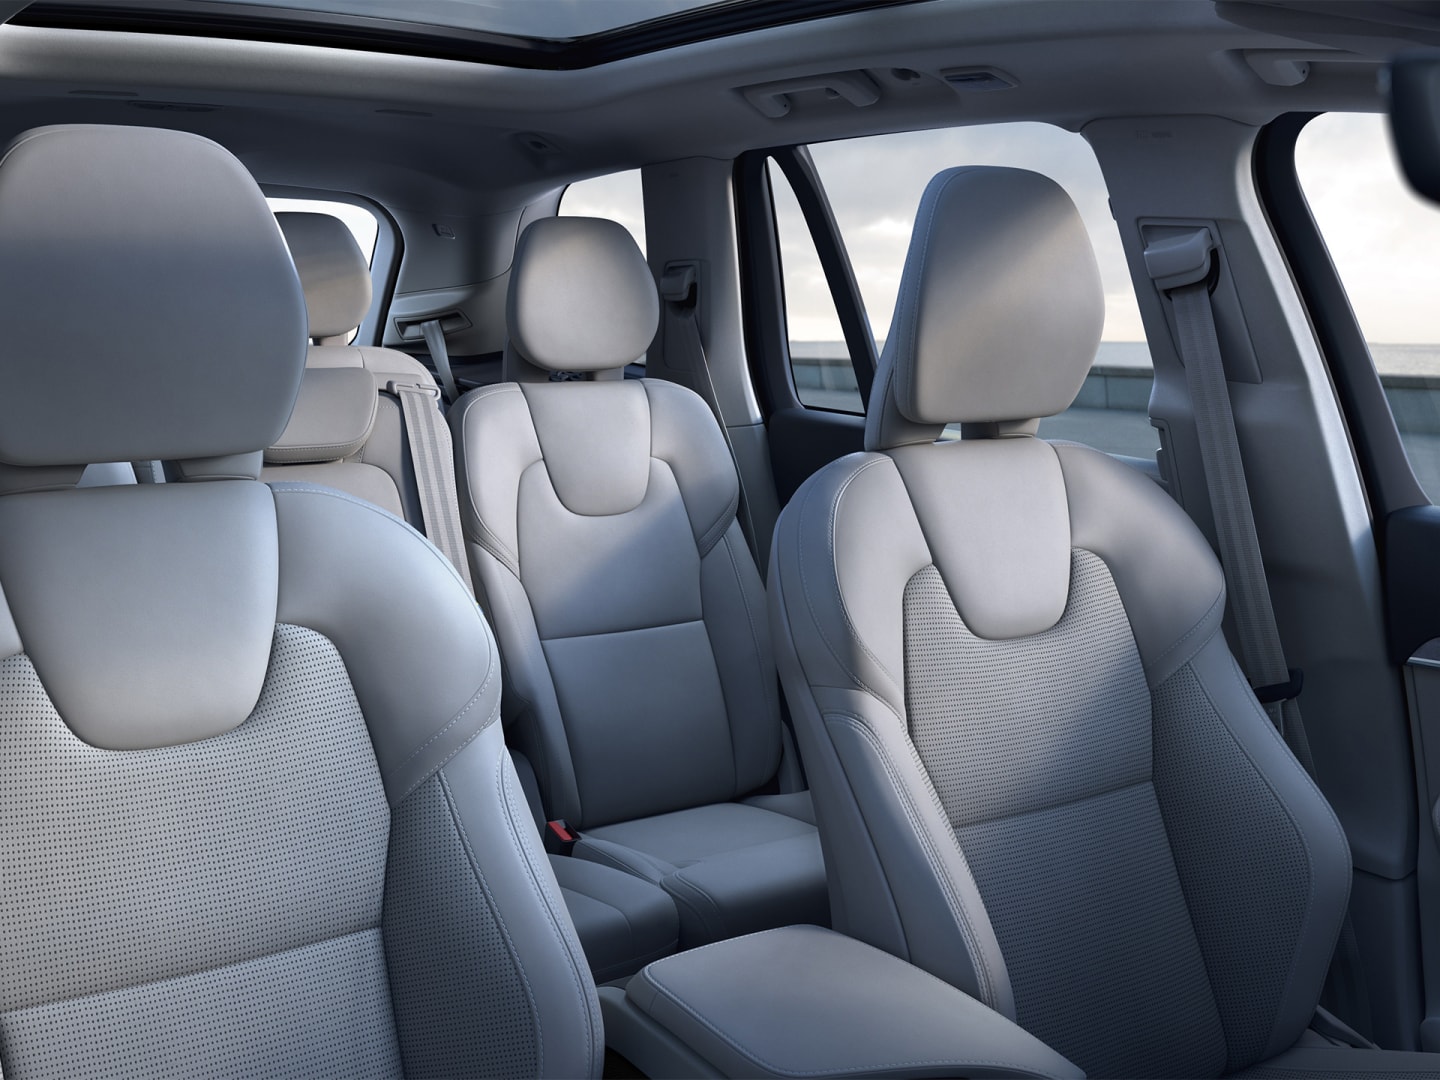 Interior habitaclu spațios și luxos în SUV-ul Volvo XC90.